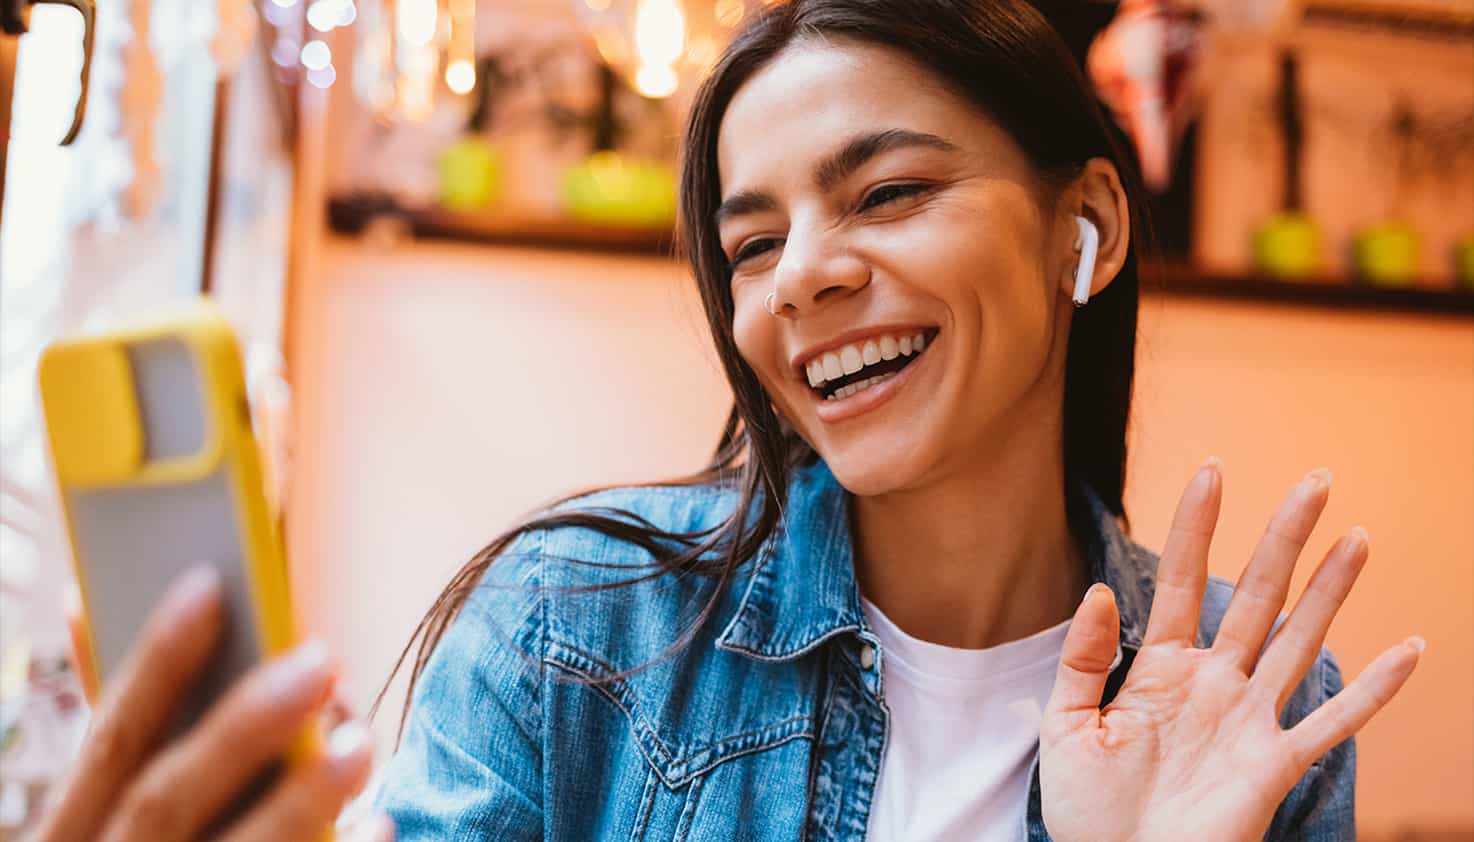 Eine Frau winkt lächelnd ihrem Telefon zu, sie ist am Videotelefonieren und trägt ihre kabellosen Ohrhörer.